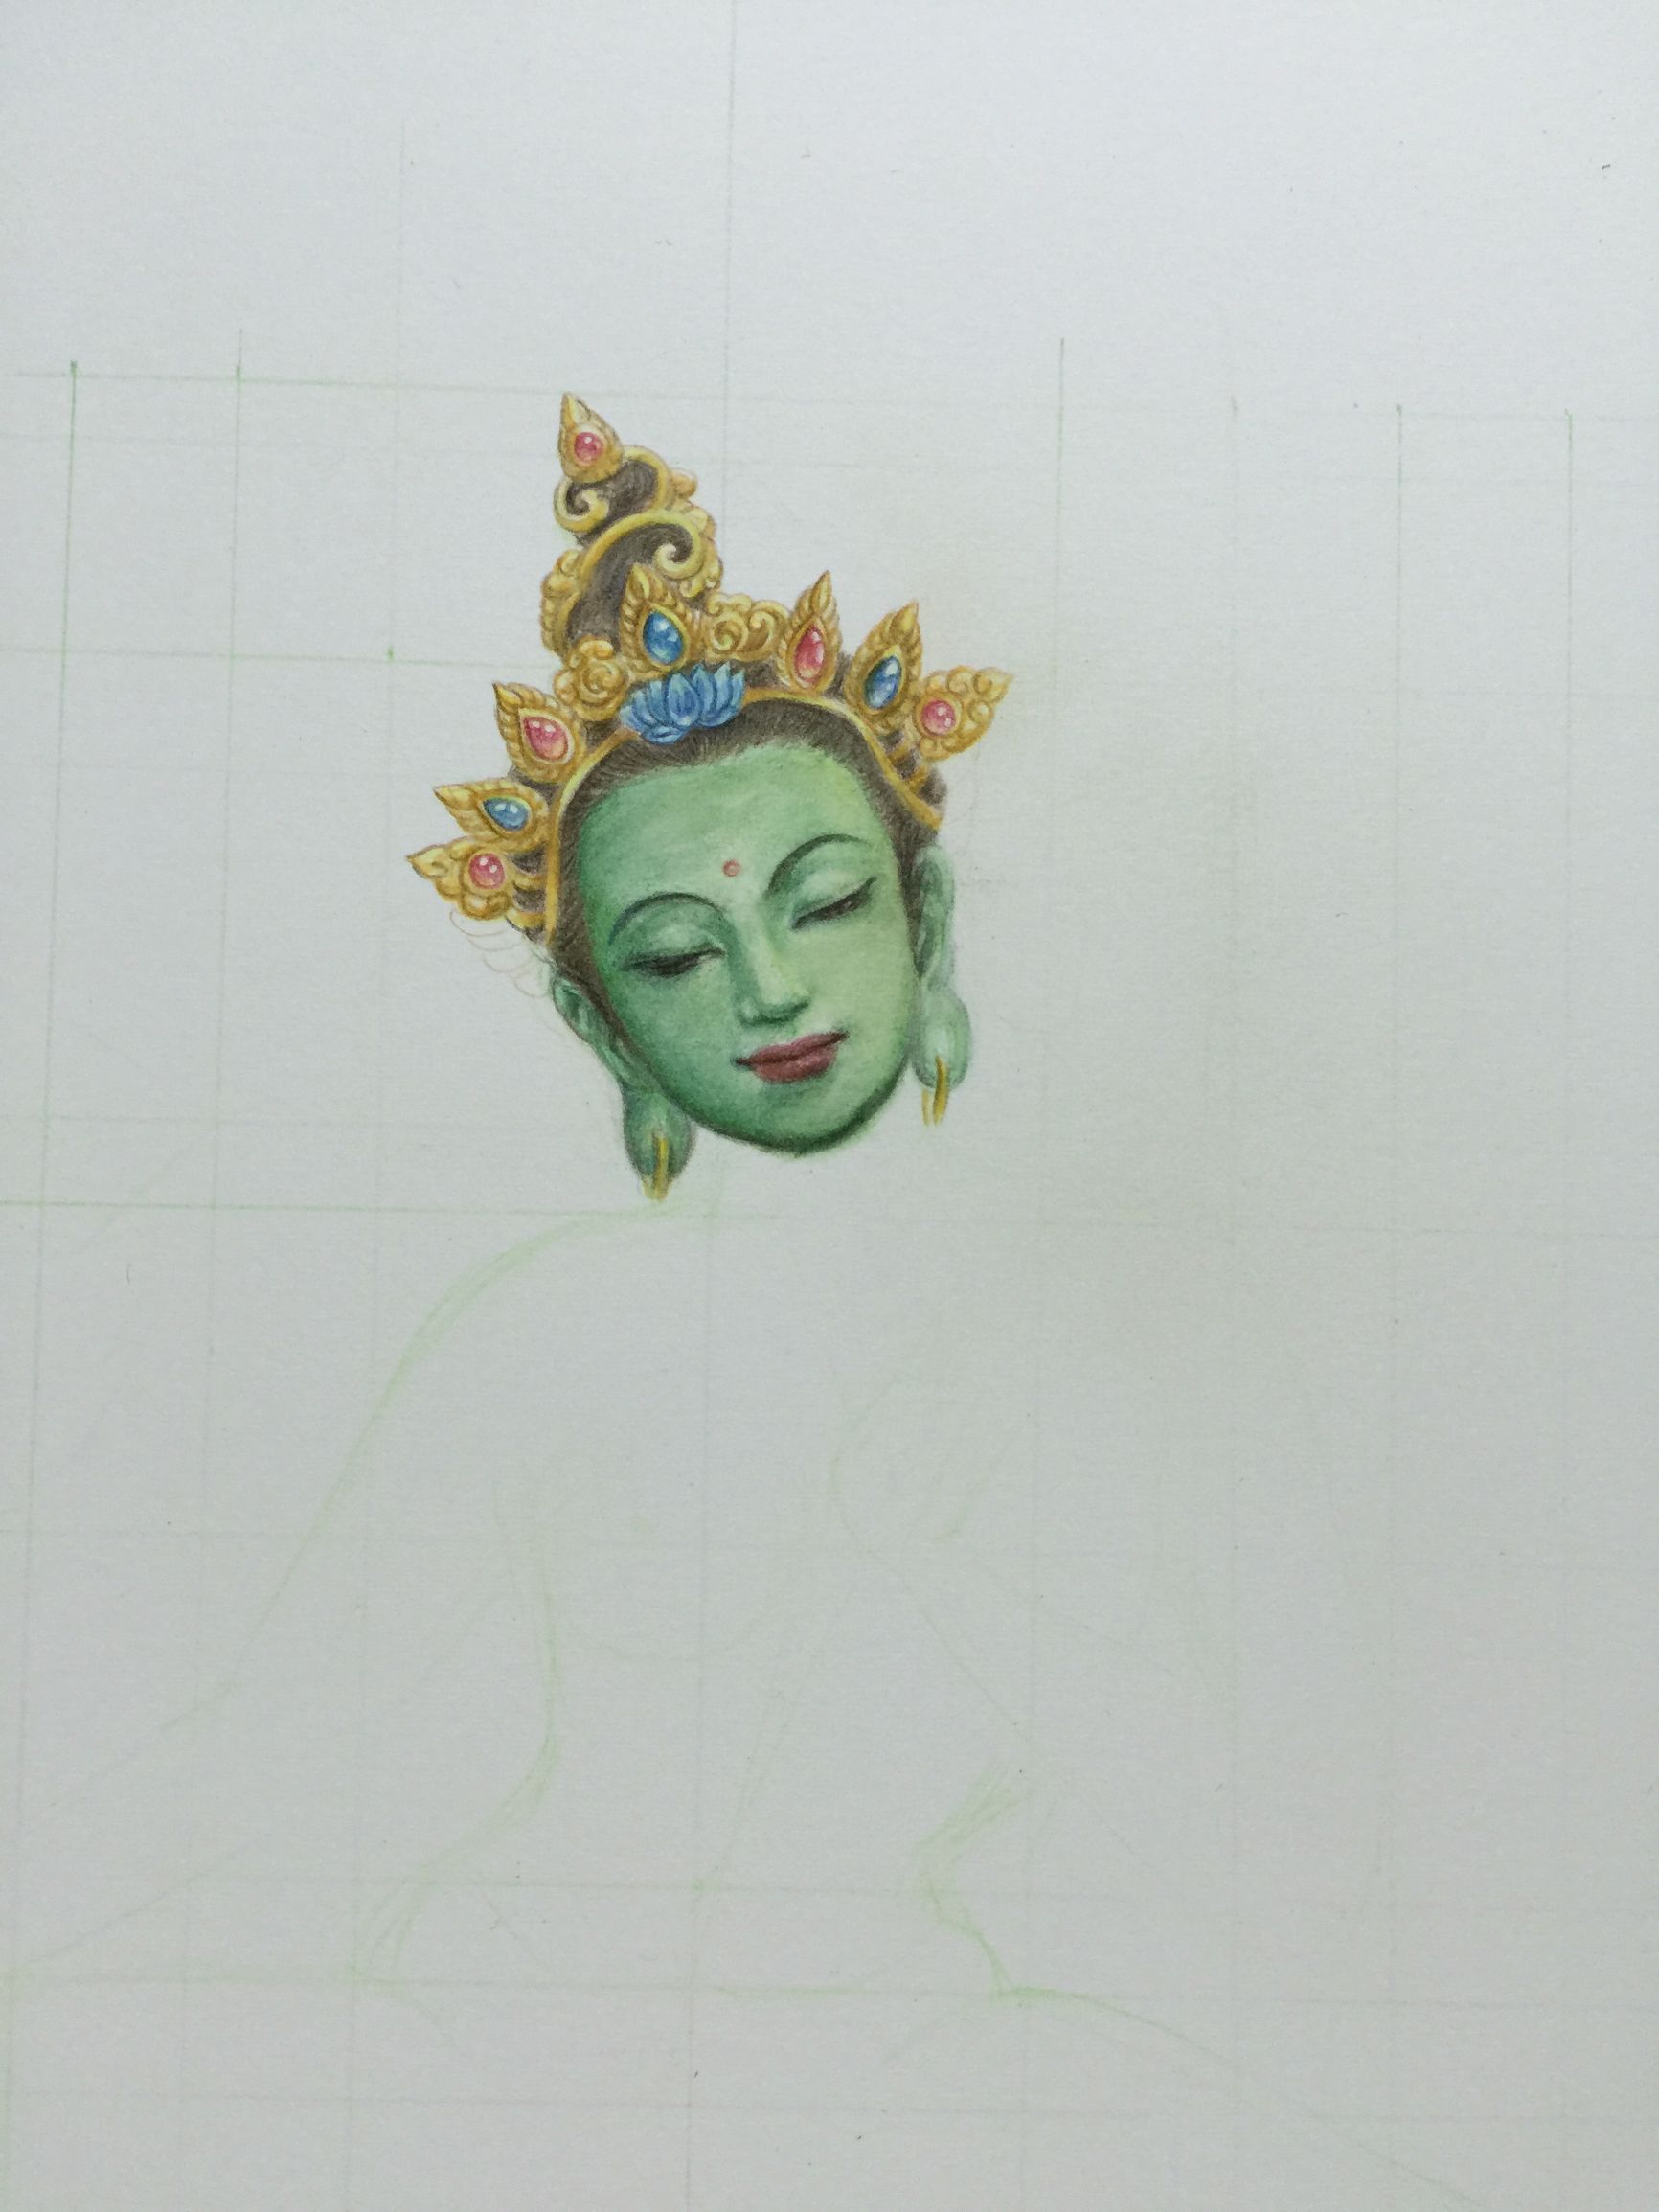 绿度母佛像唐卡彩铅画日记，已完成并赠送。